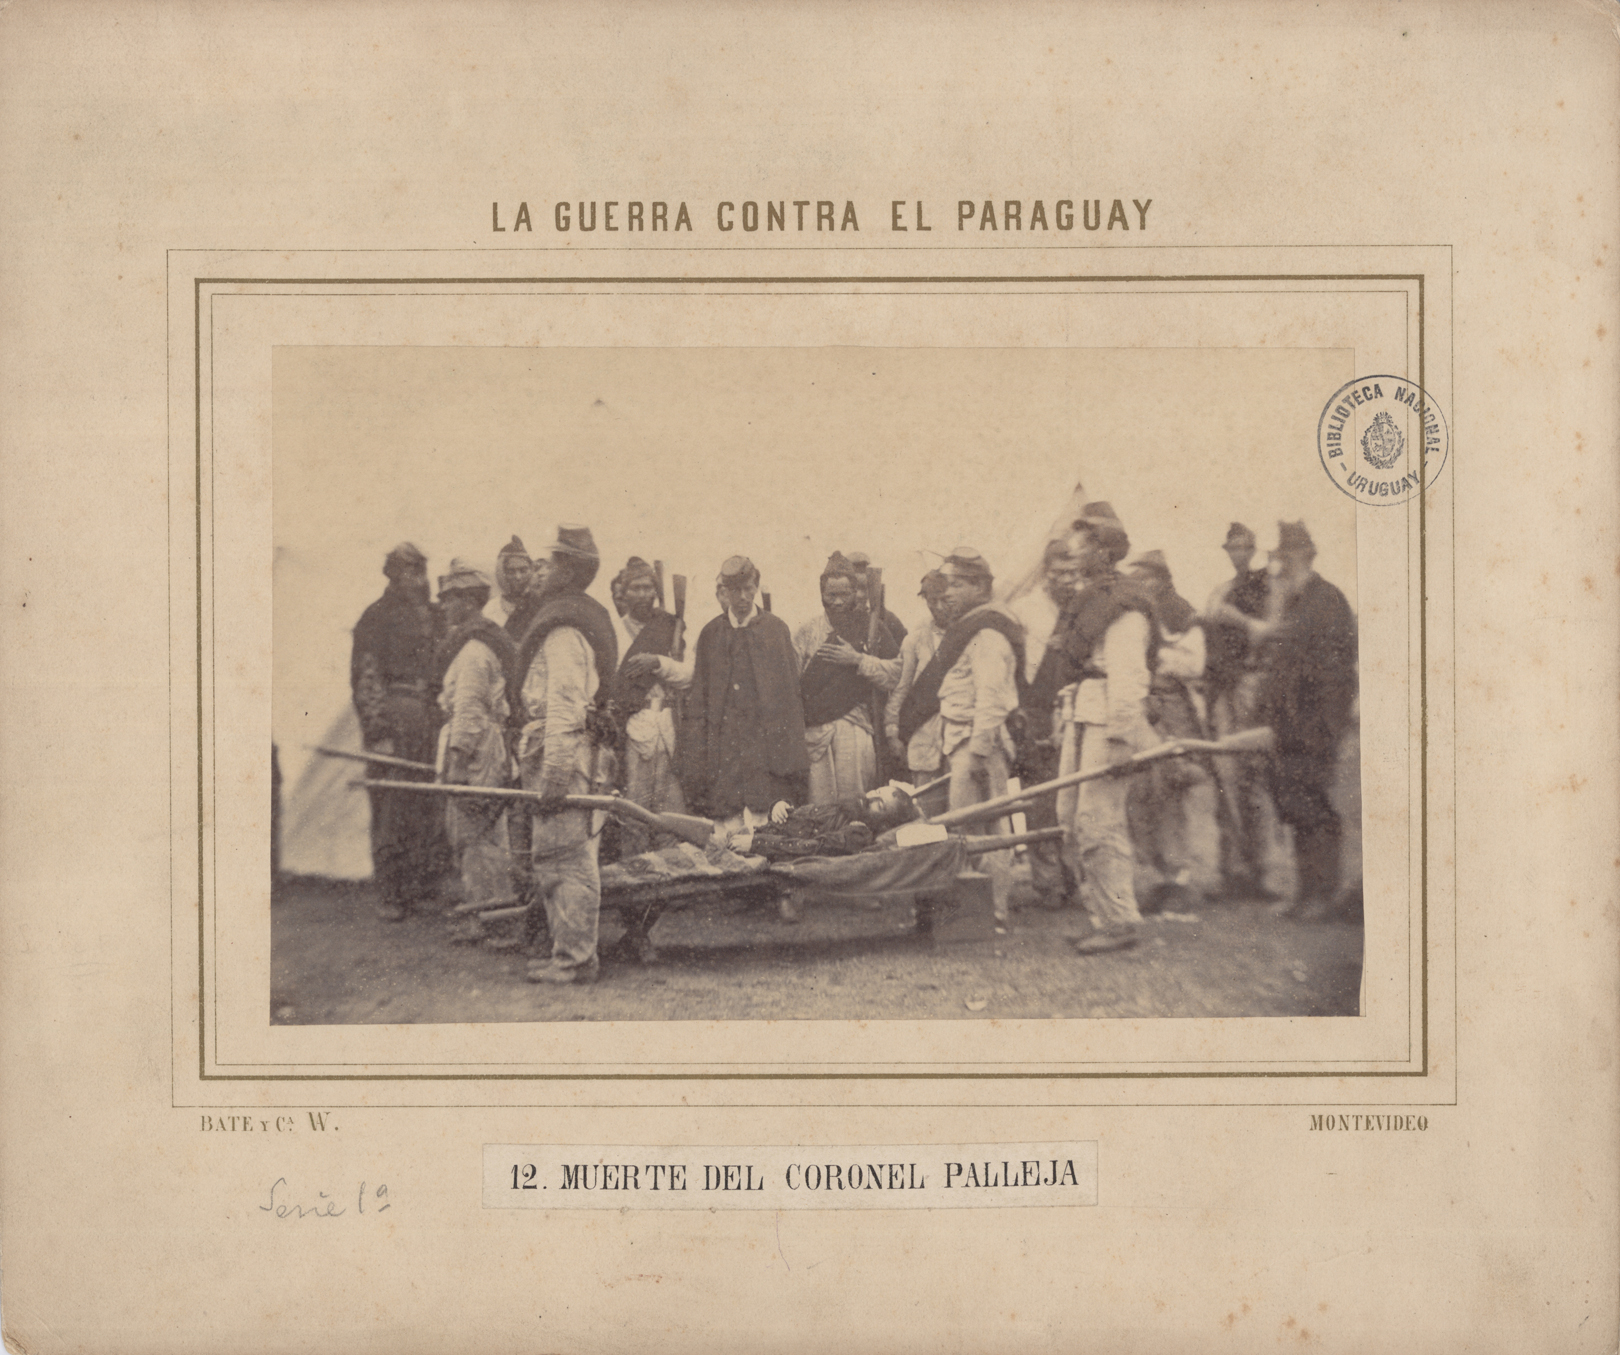 Imagen que muestra al cuerpo del Coronel Palleja llevado por sus subalternos